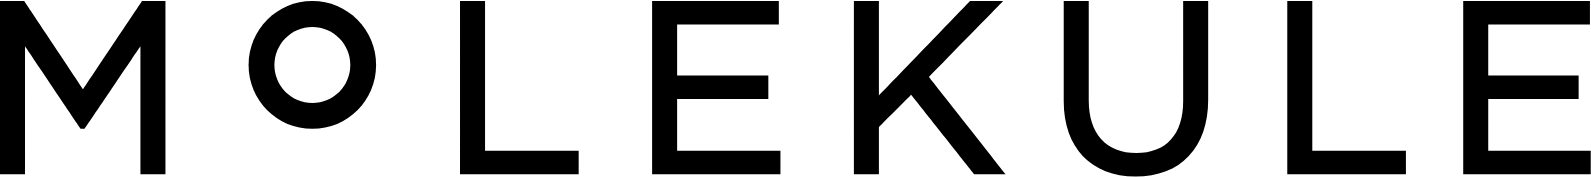 Molekule Group logo large (transparent PNG)